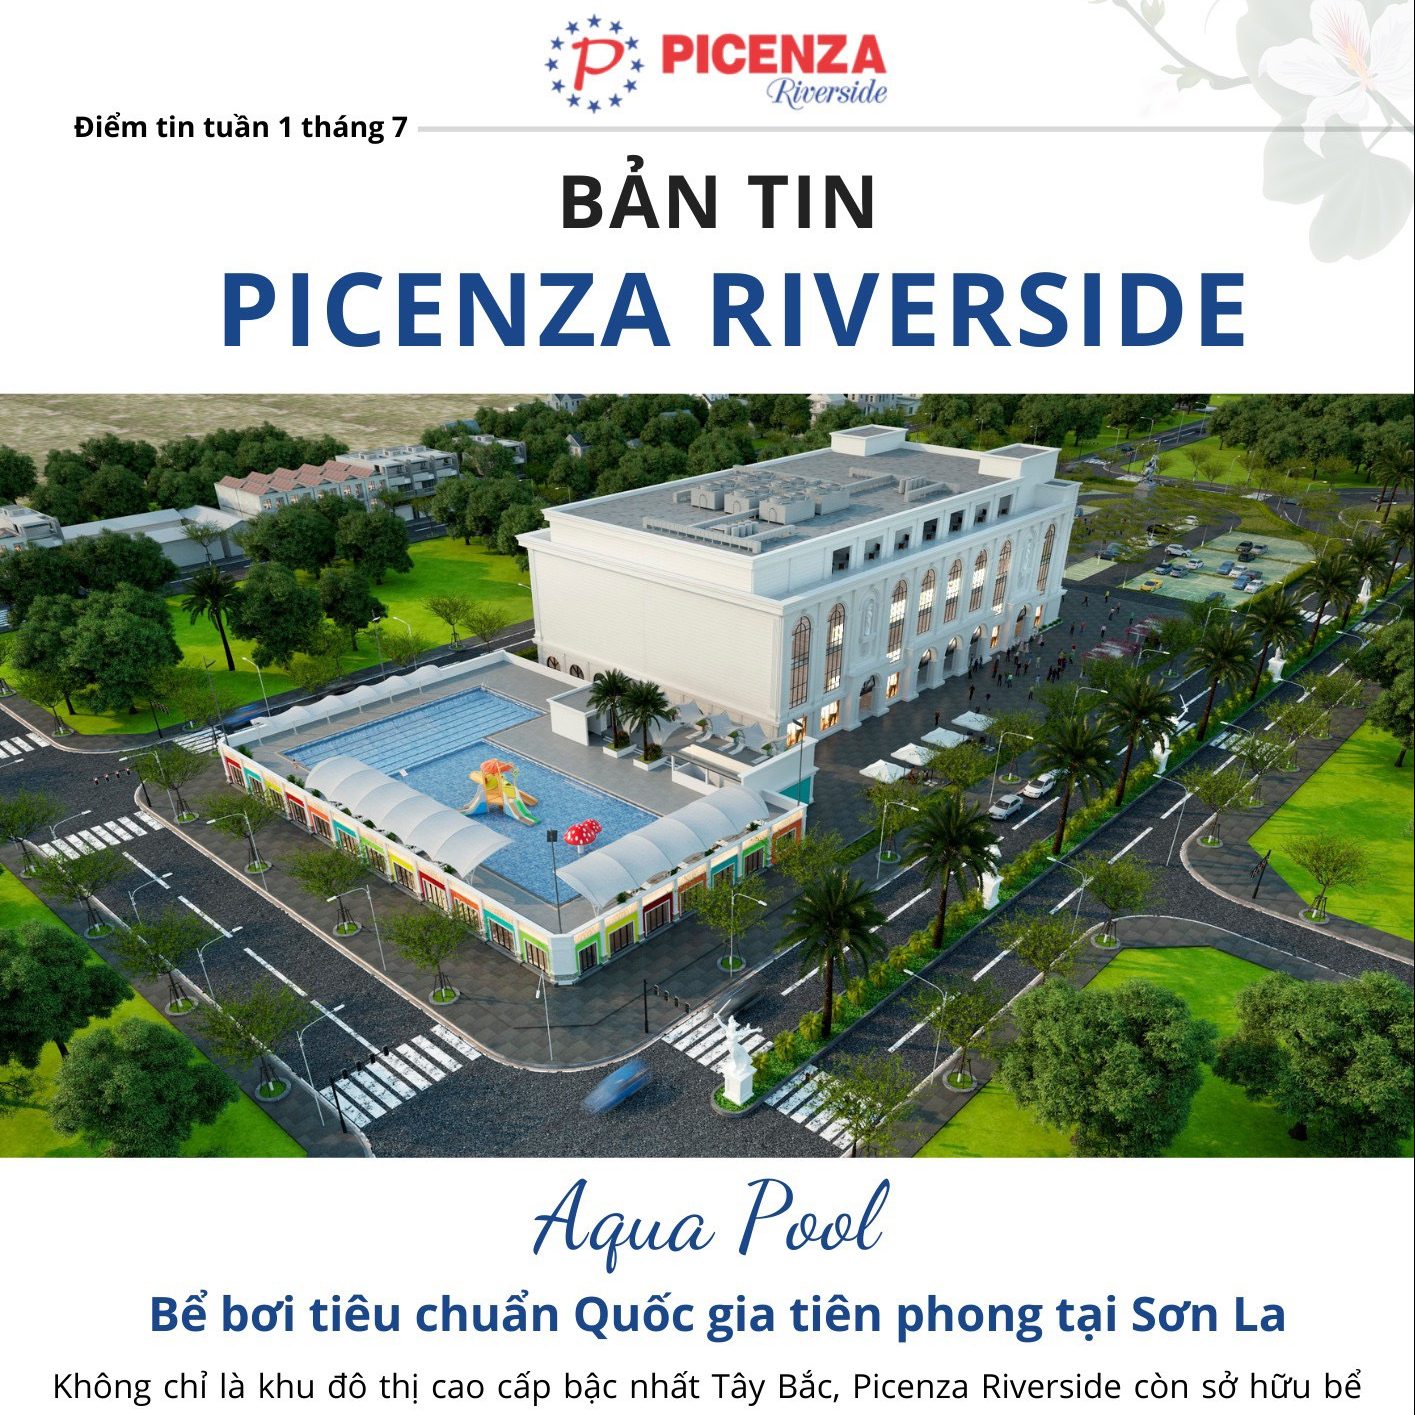 Bản tin Picenza Riverside tuần 1 tháng 7 năm 2022